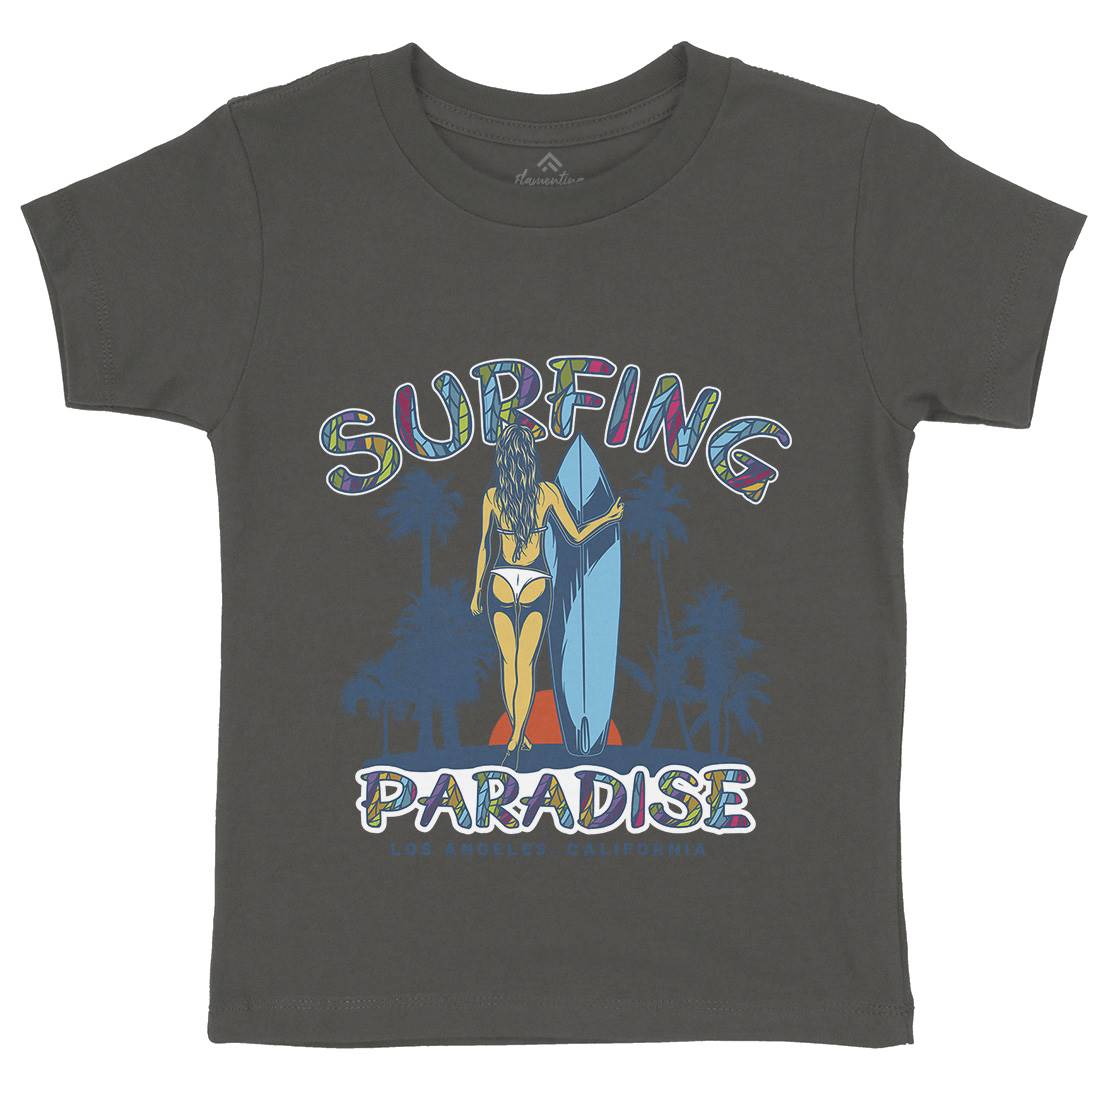 Surfing Paradise La Kids Crew Neck T-Shirt Surf D990